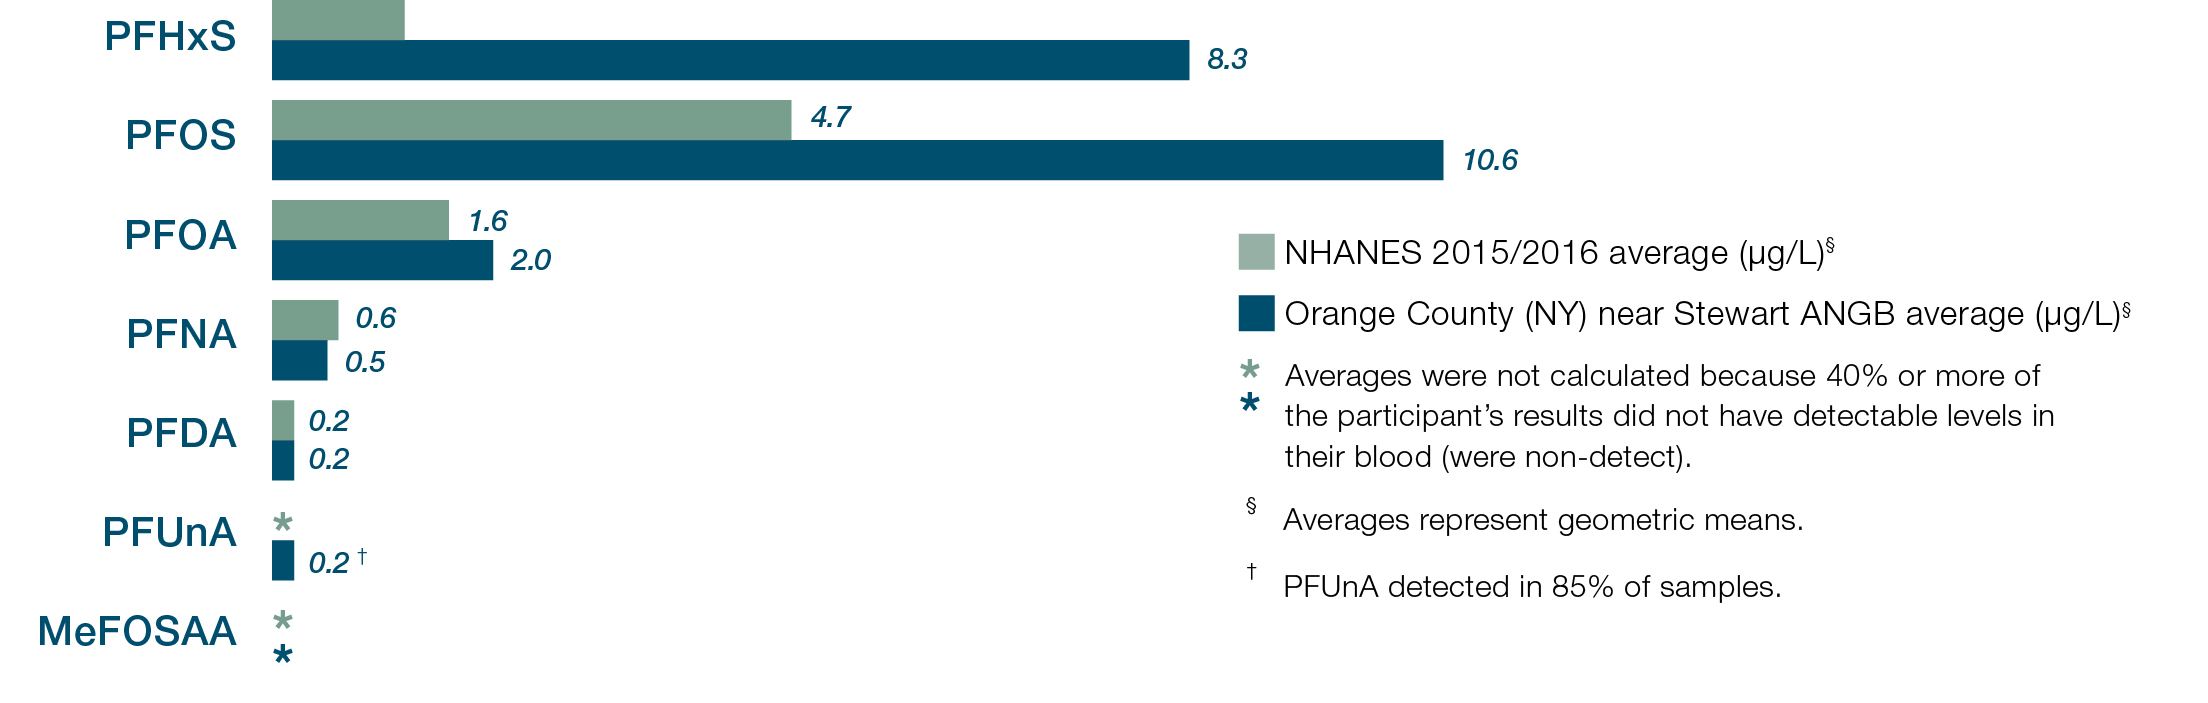 PFAS levels Orange County vs national avg. PFHxS 8.3 vs 1.2. PFOS 10.6 vs 4.7. PFOA 2 vs 1.6. PFNA .5 vs .6. PFDA .2 vs .2